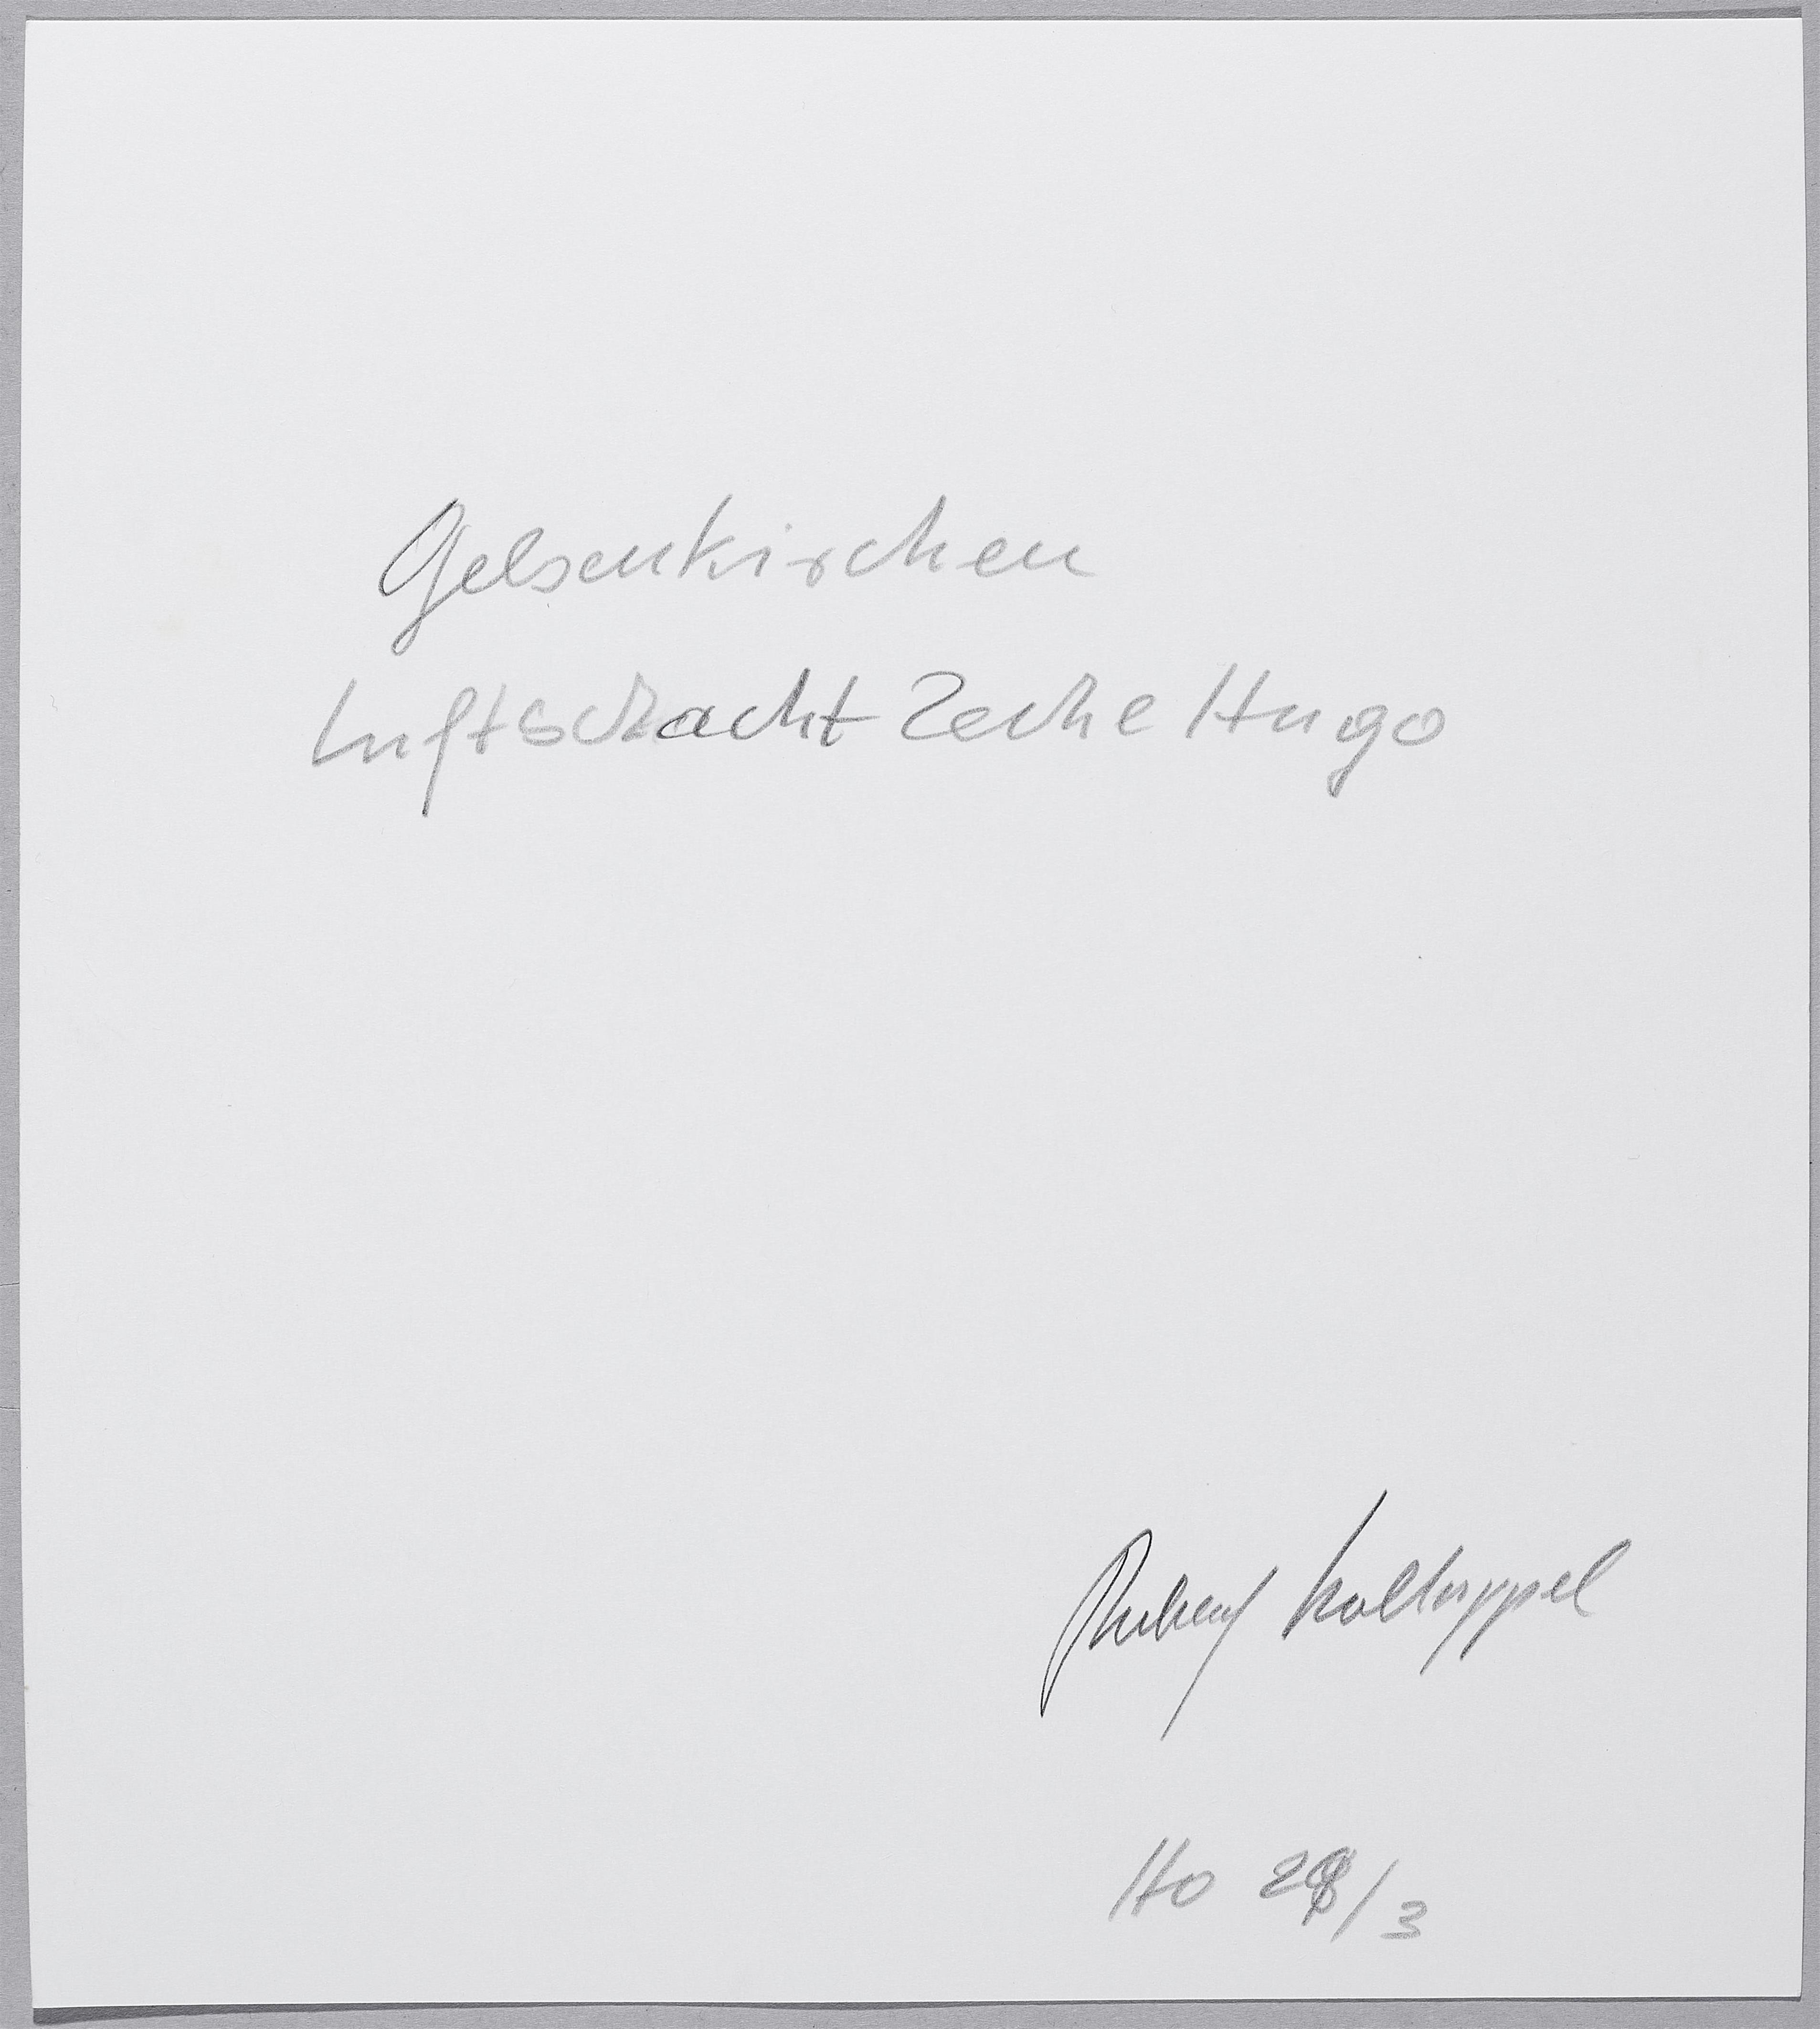 Rudolf Holtappel - Luftschacht Zeche Hugo, Gelsenkirchen - image-2